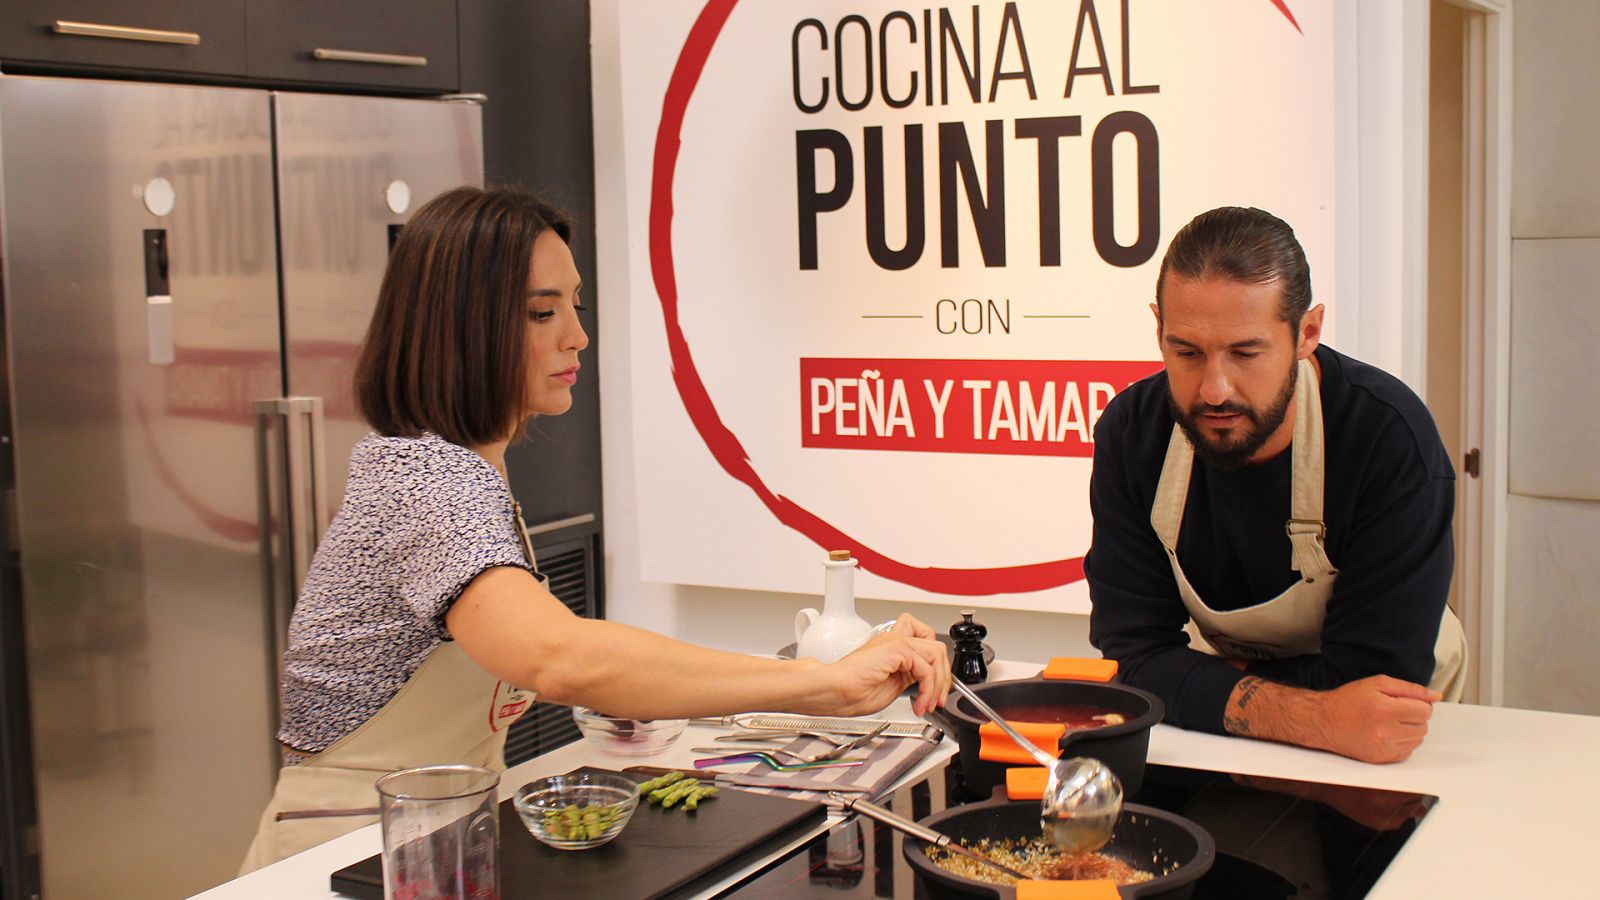  Cocina al punto con Peña y Tamara - Anchoa de Santoña - RTVE.es